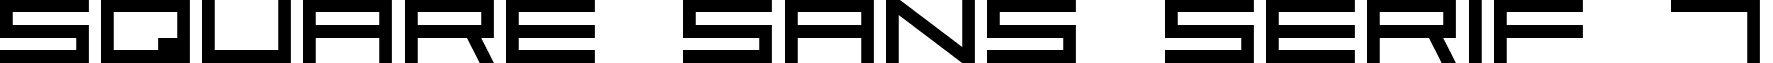 Square Sans Serif 7 font - square_sans_serif_7.ttf